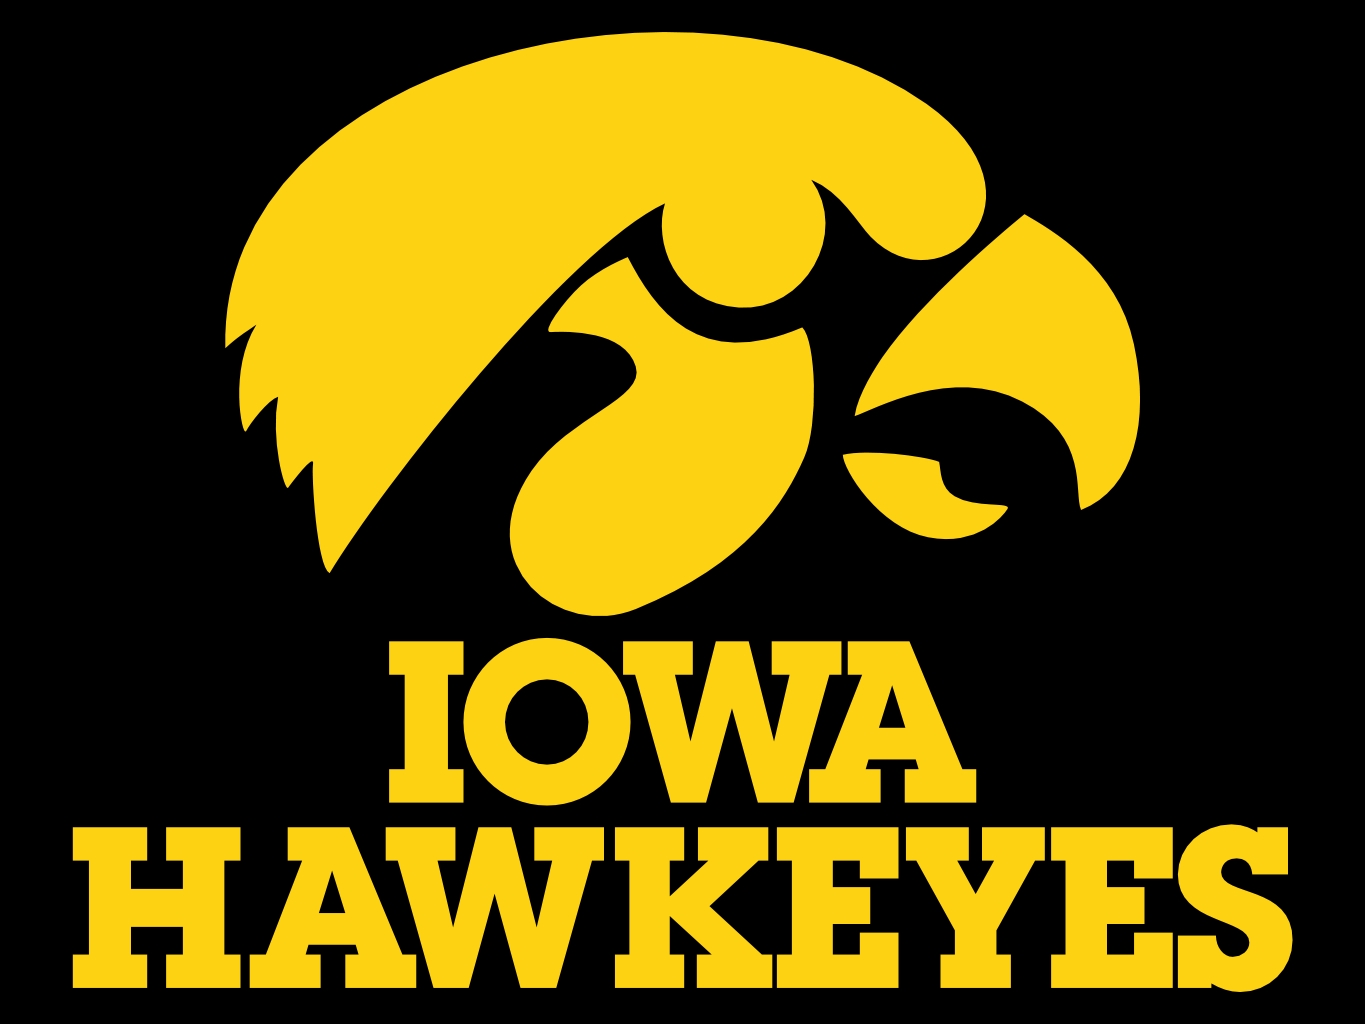 Is Creepy Looking At Iowa Hawkeye Football Recruiting Targets